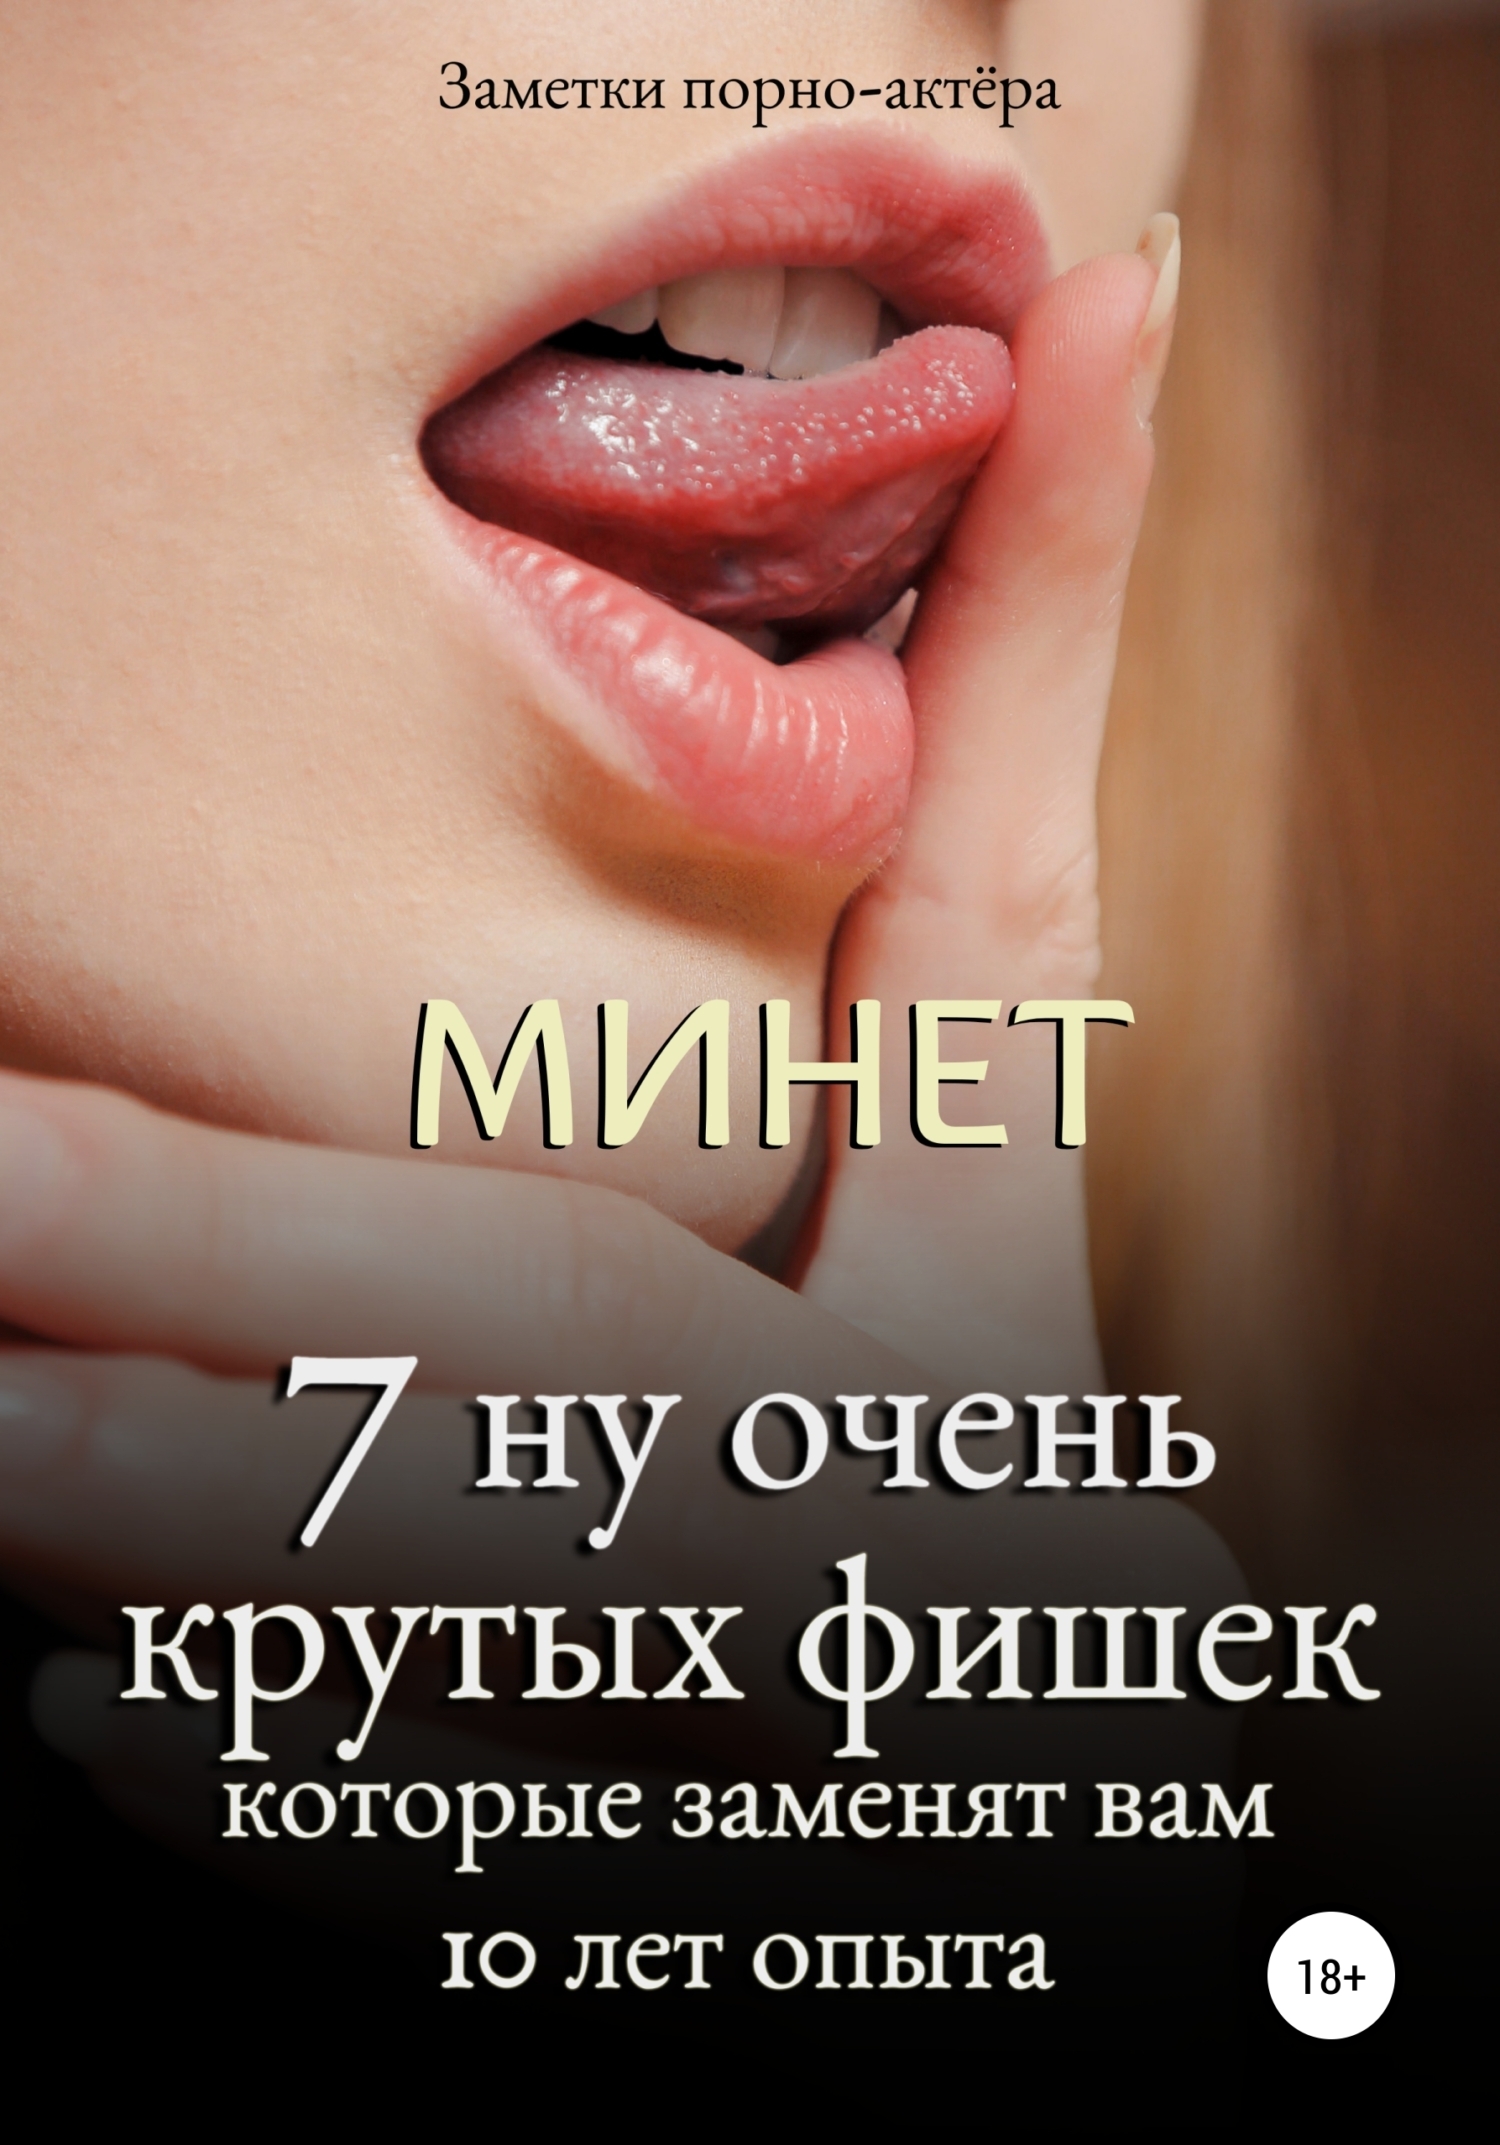 Минет. 7 секретов полового члена, о которых вы должны знать, Заметки  порно-актёра – скачать книгу fb2, epub, pdf на ЛитРес